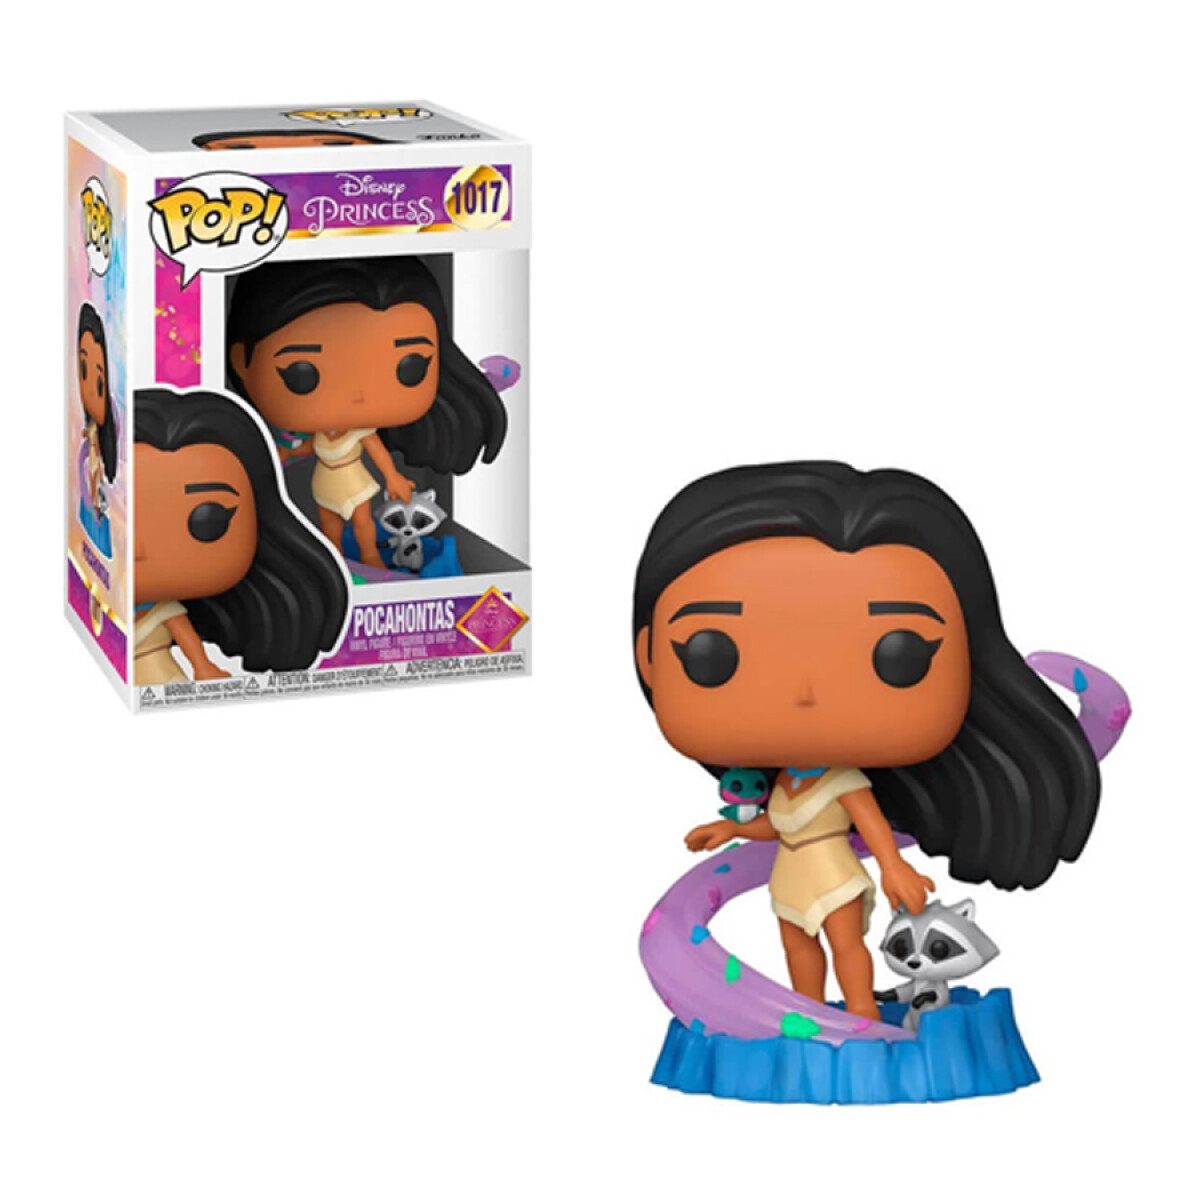 Pocahontas - Disney Princess - 1017 